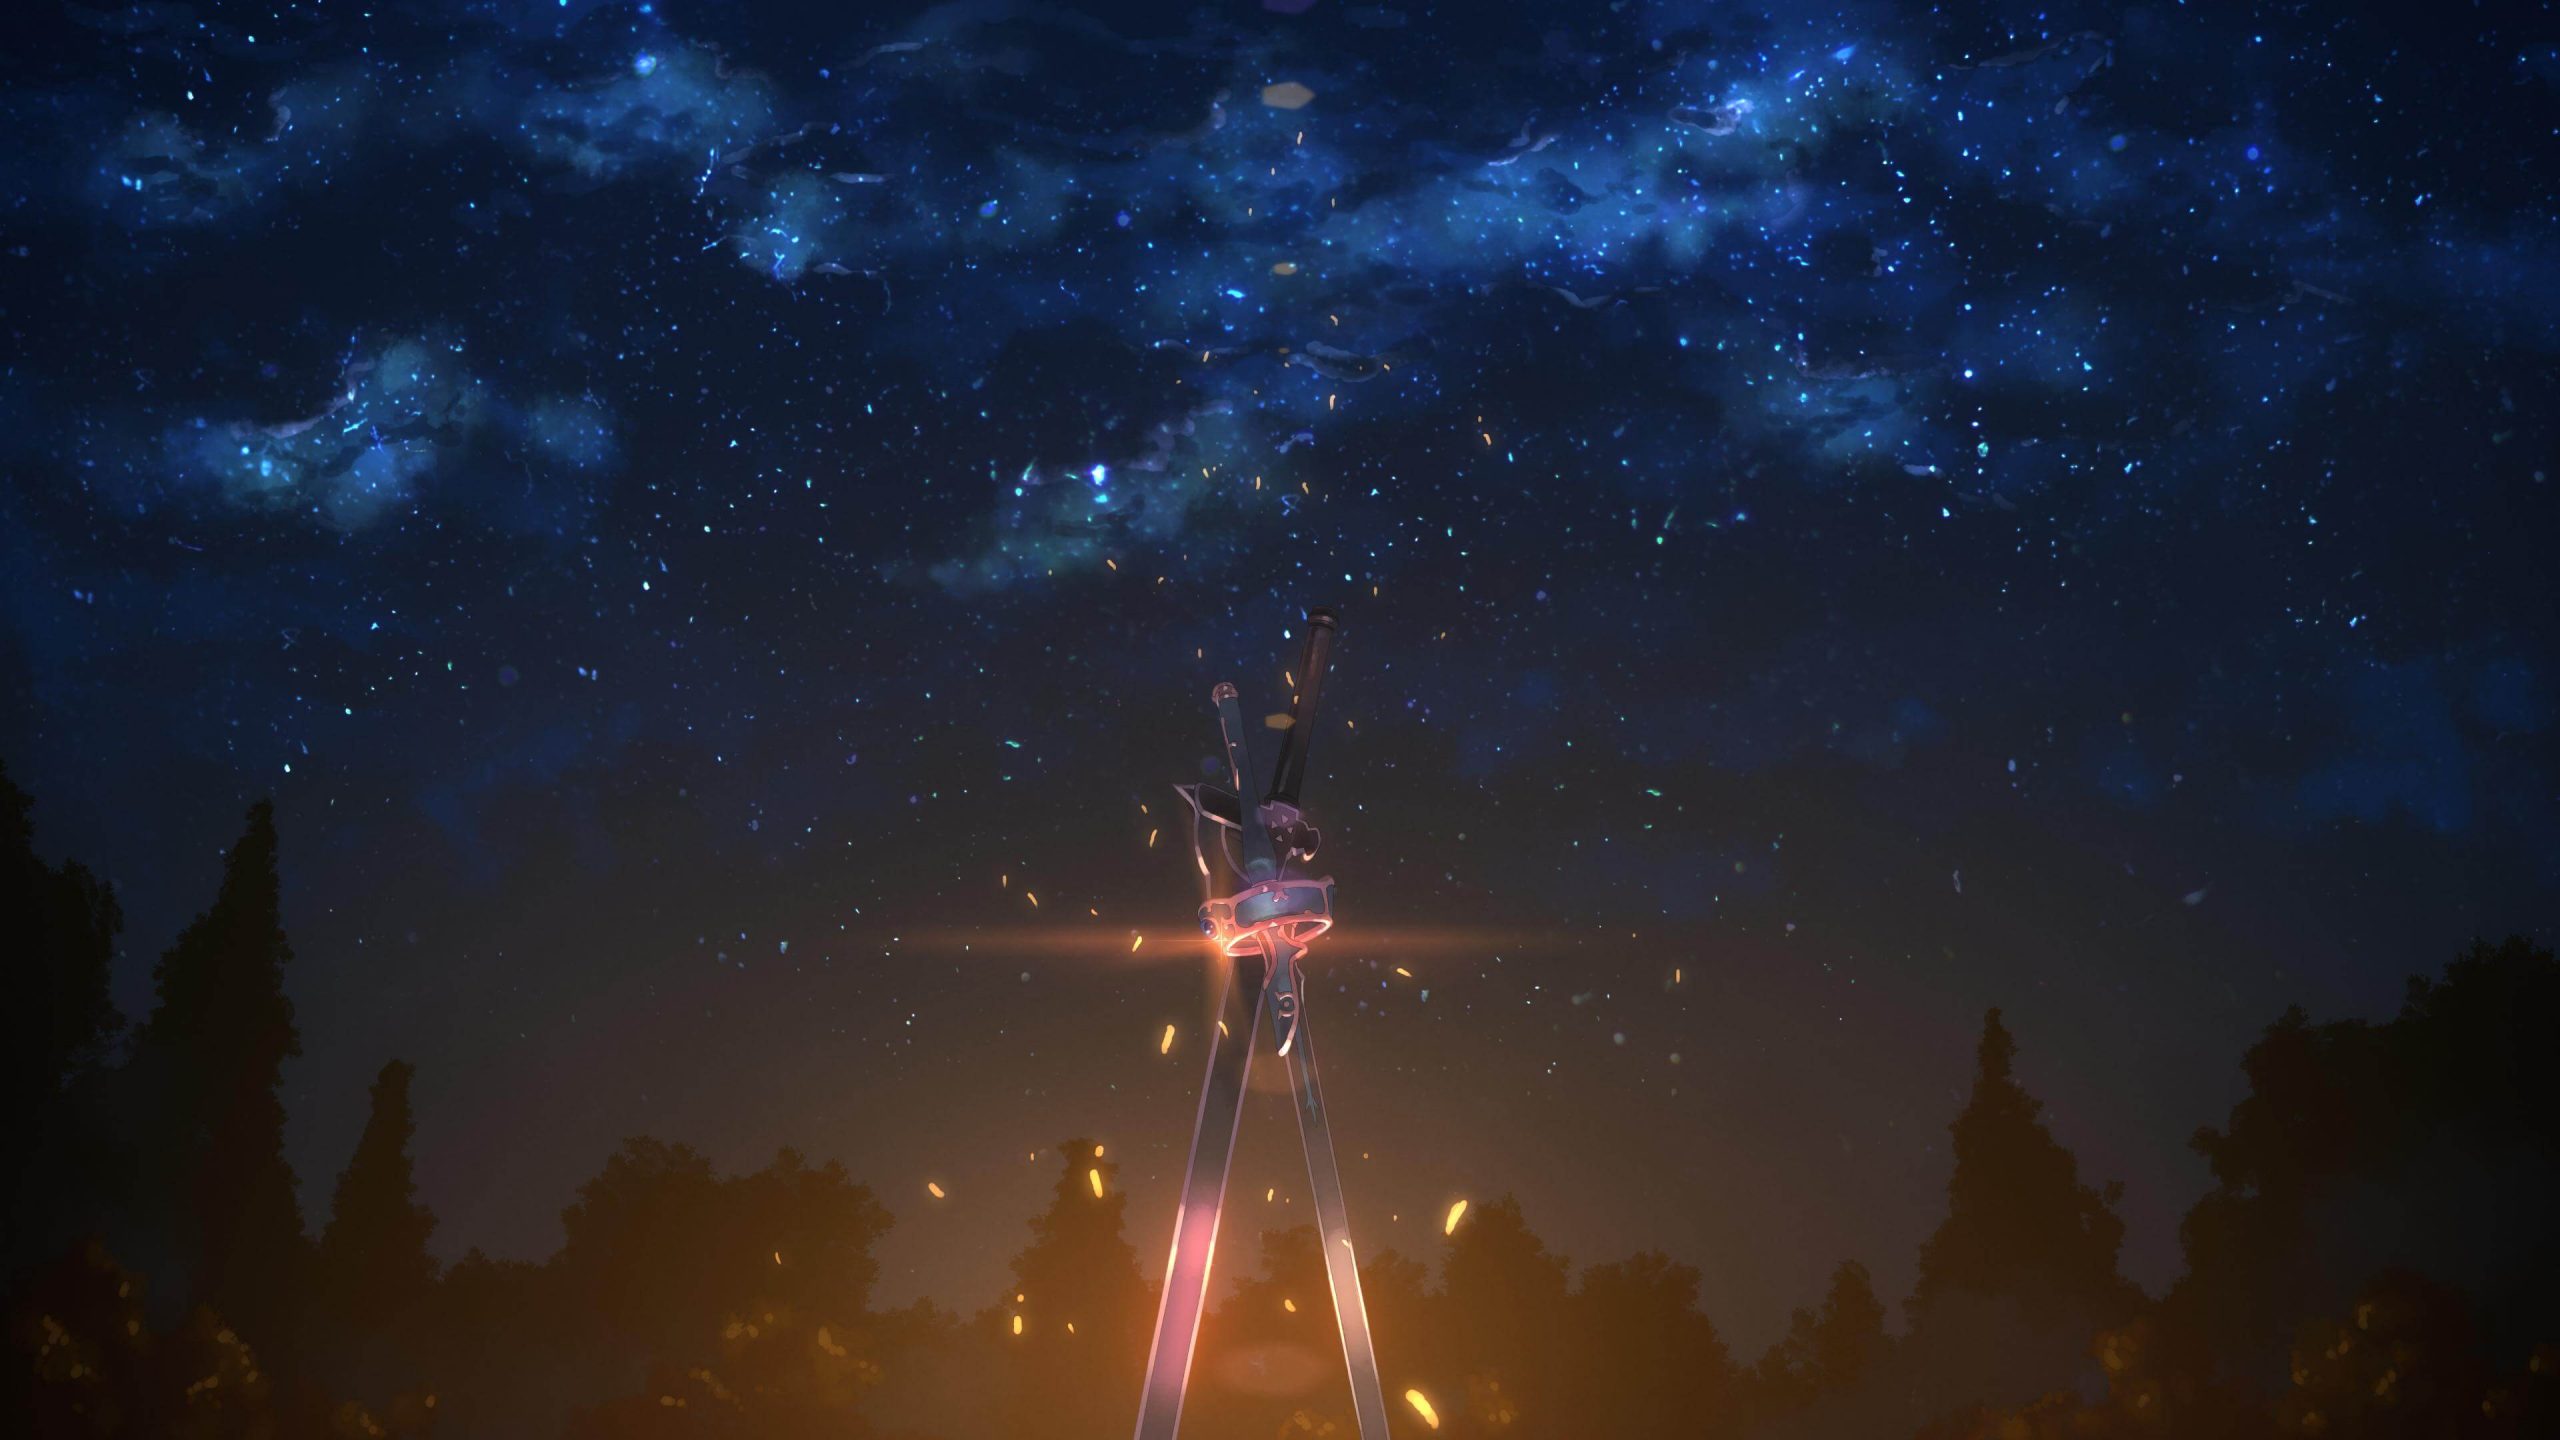 Hình nền anime galaxy đẹp: Còn chờ gì nữa, trang trí ngay màn hình của bạn với hình nền Anime Galaxy đẹp mắt này. Trải nghiệm một không gian giải trí tuyệt vời và cùng đồng hành với những nhân vật Anime hấp dẫn nhất.